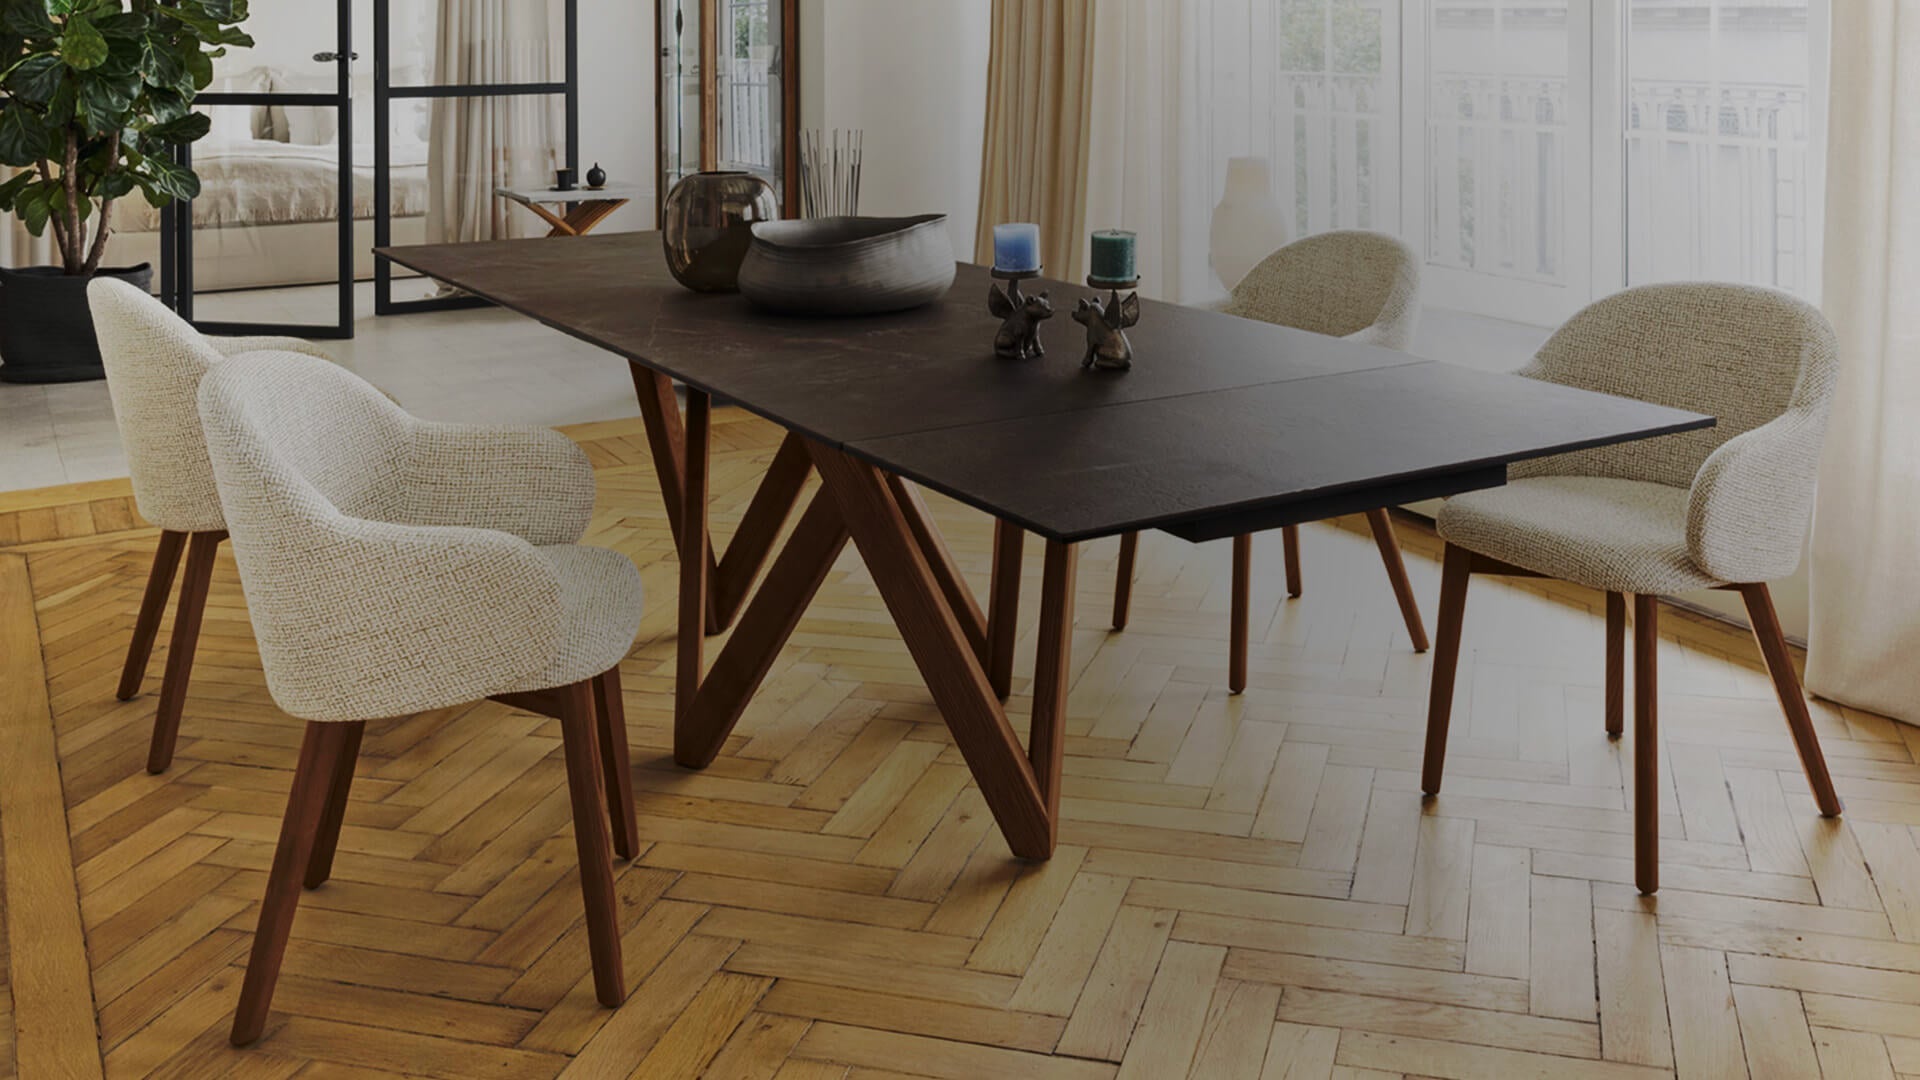 Cartesio-S 200 Utrekkbart Wood, en del av kategorien Spisebord - At Home Interiør